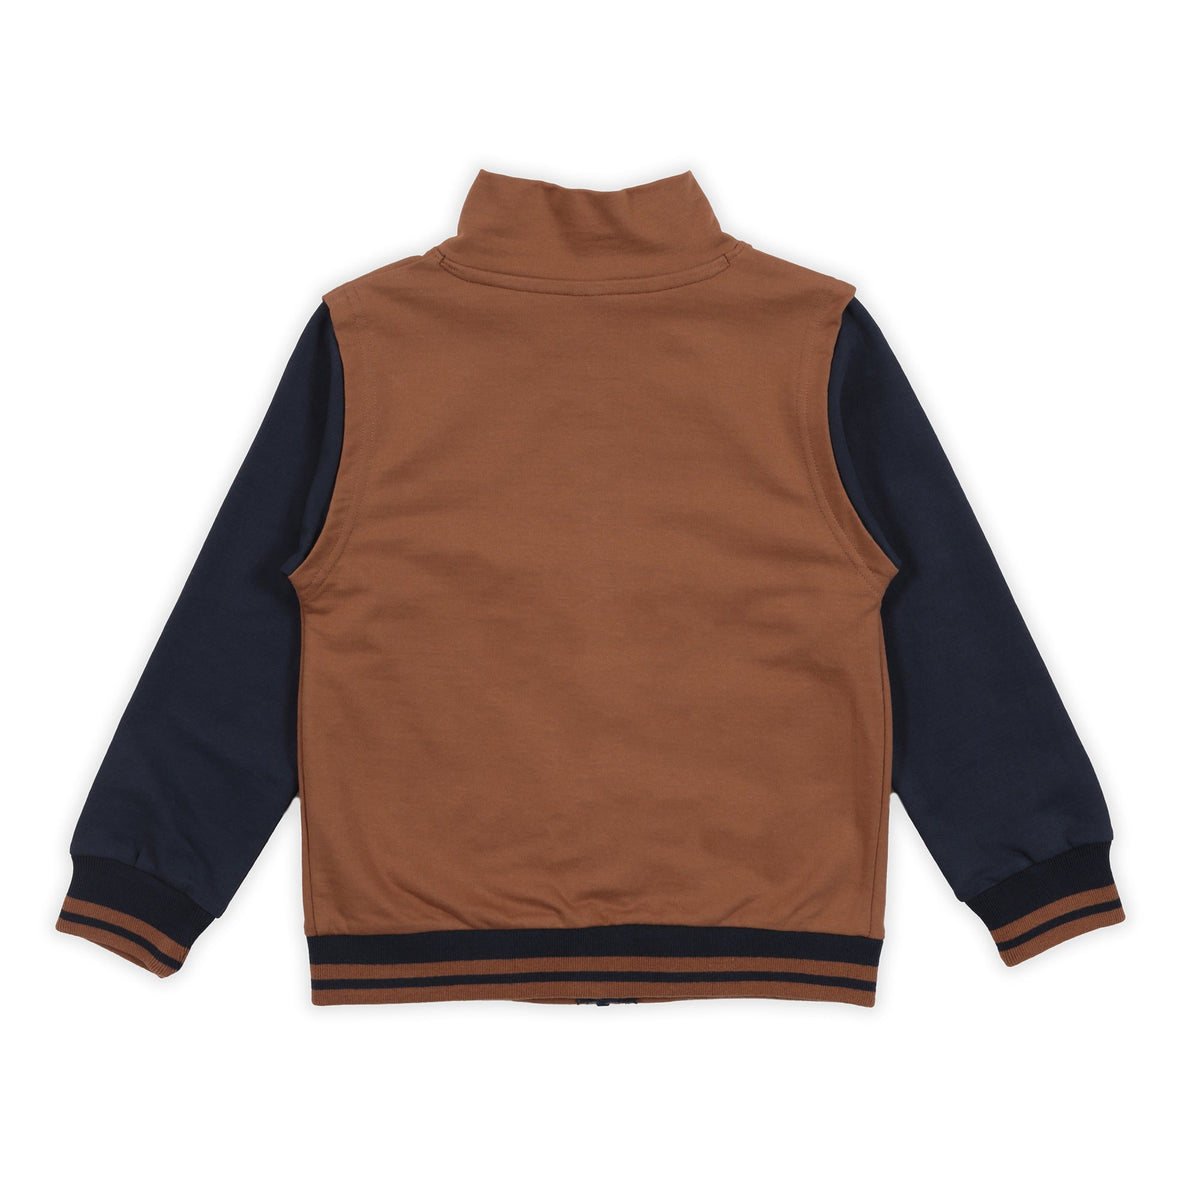 Veste pour enfant garçon par Nanö | F2305-08 Marine | Boutique Flos, vêtements mode pour bébés et enfants